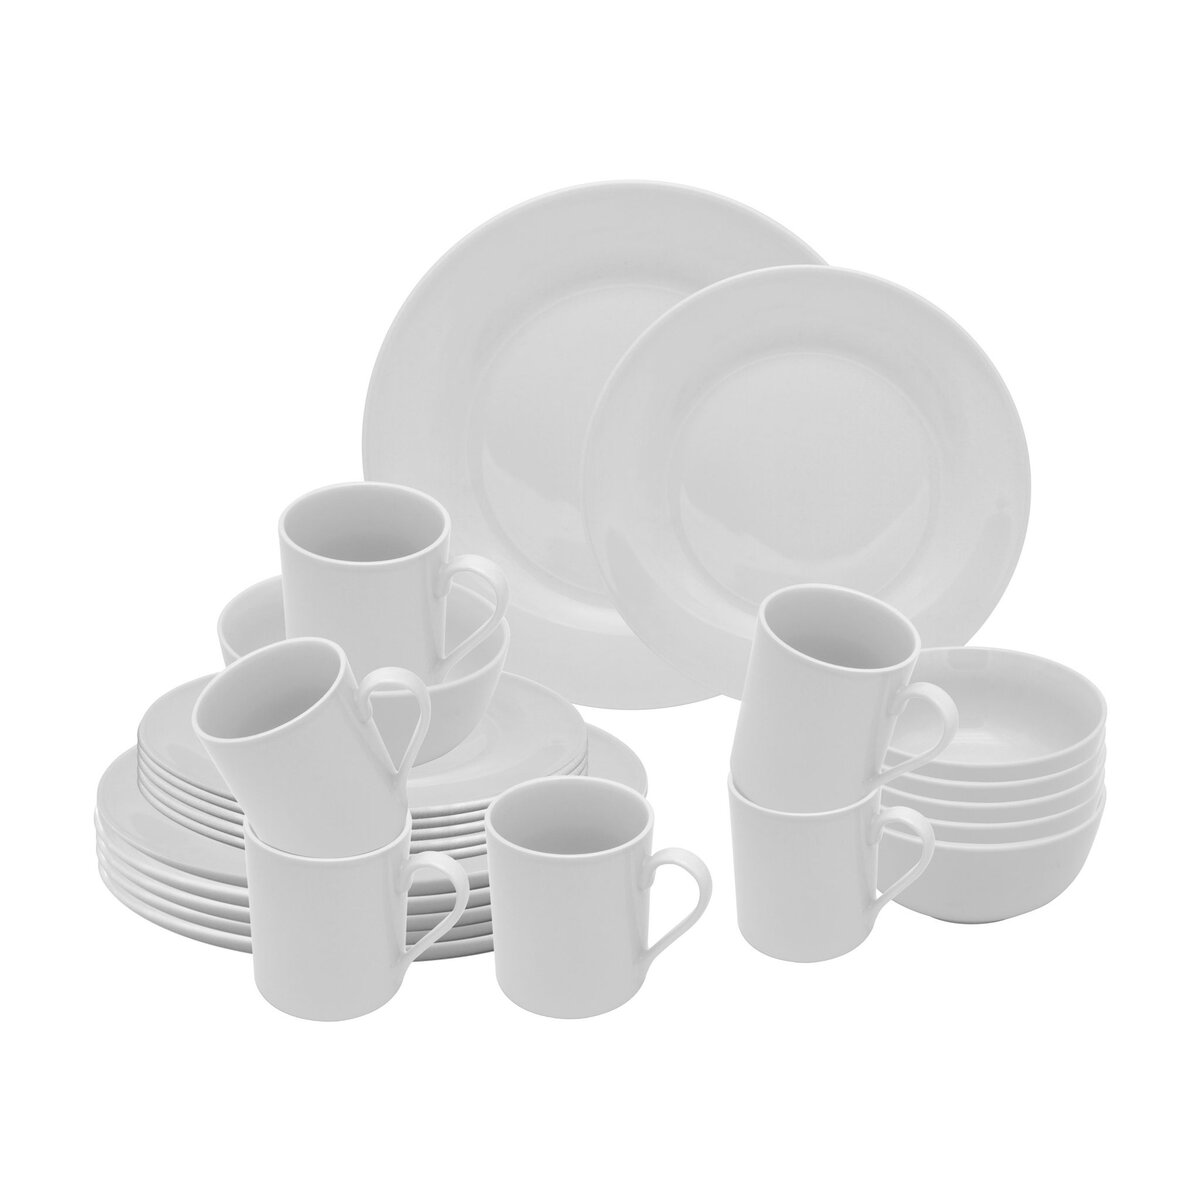 Tasse & Assiette : Service complet de vaisselle en porcelaine Black or  White 21 pièces